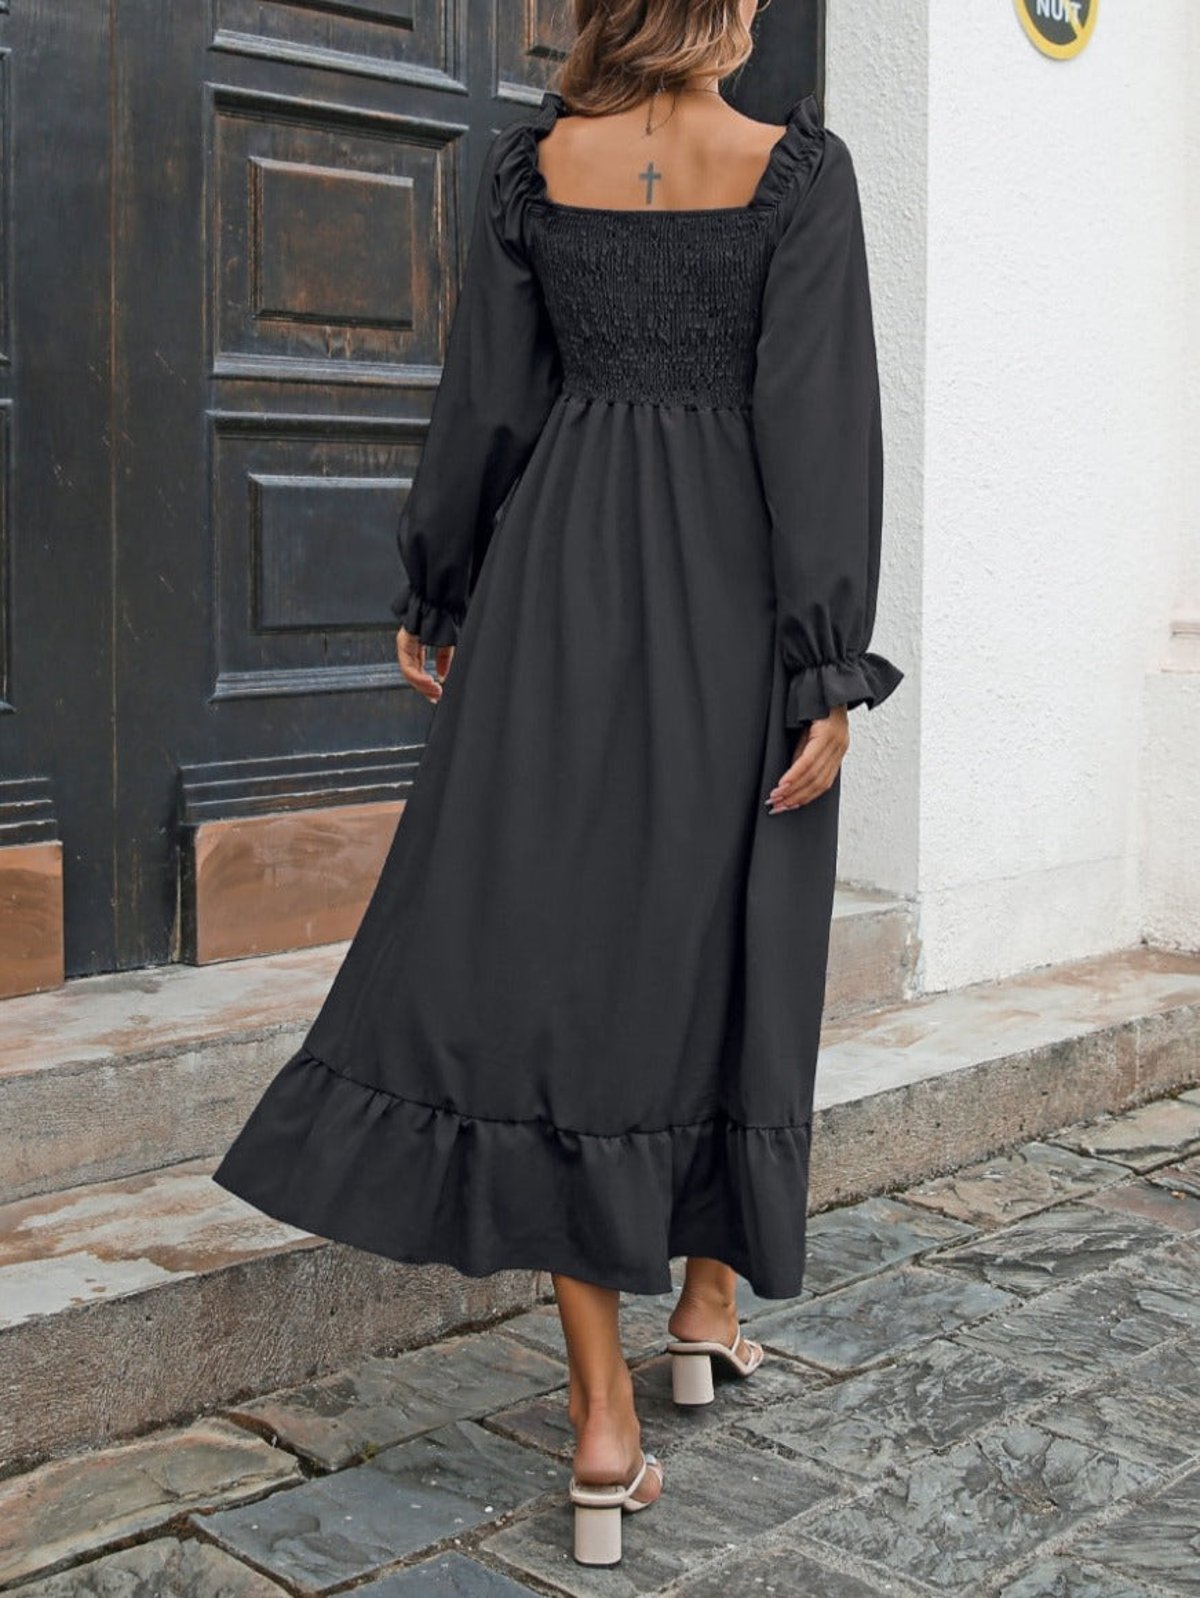 Black peasant dresses